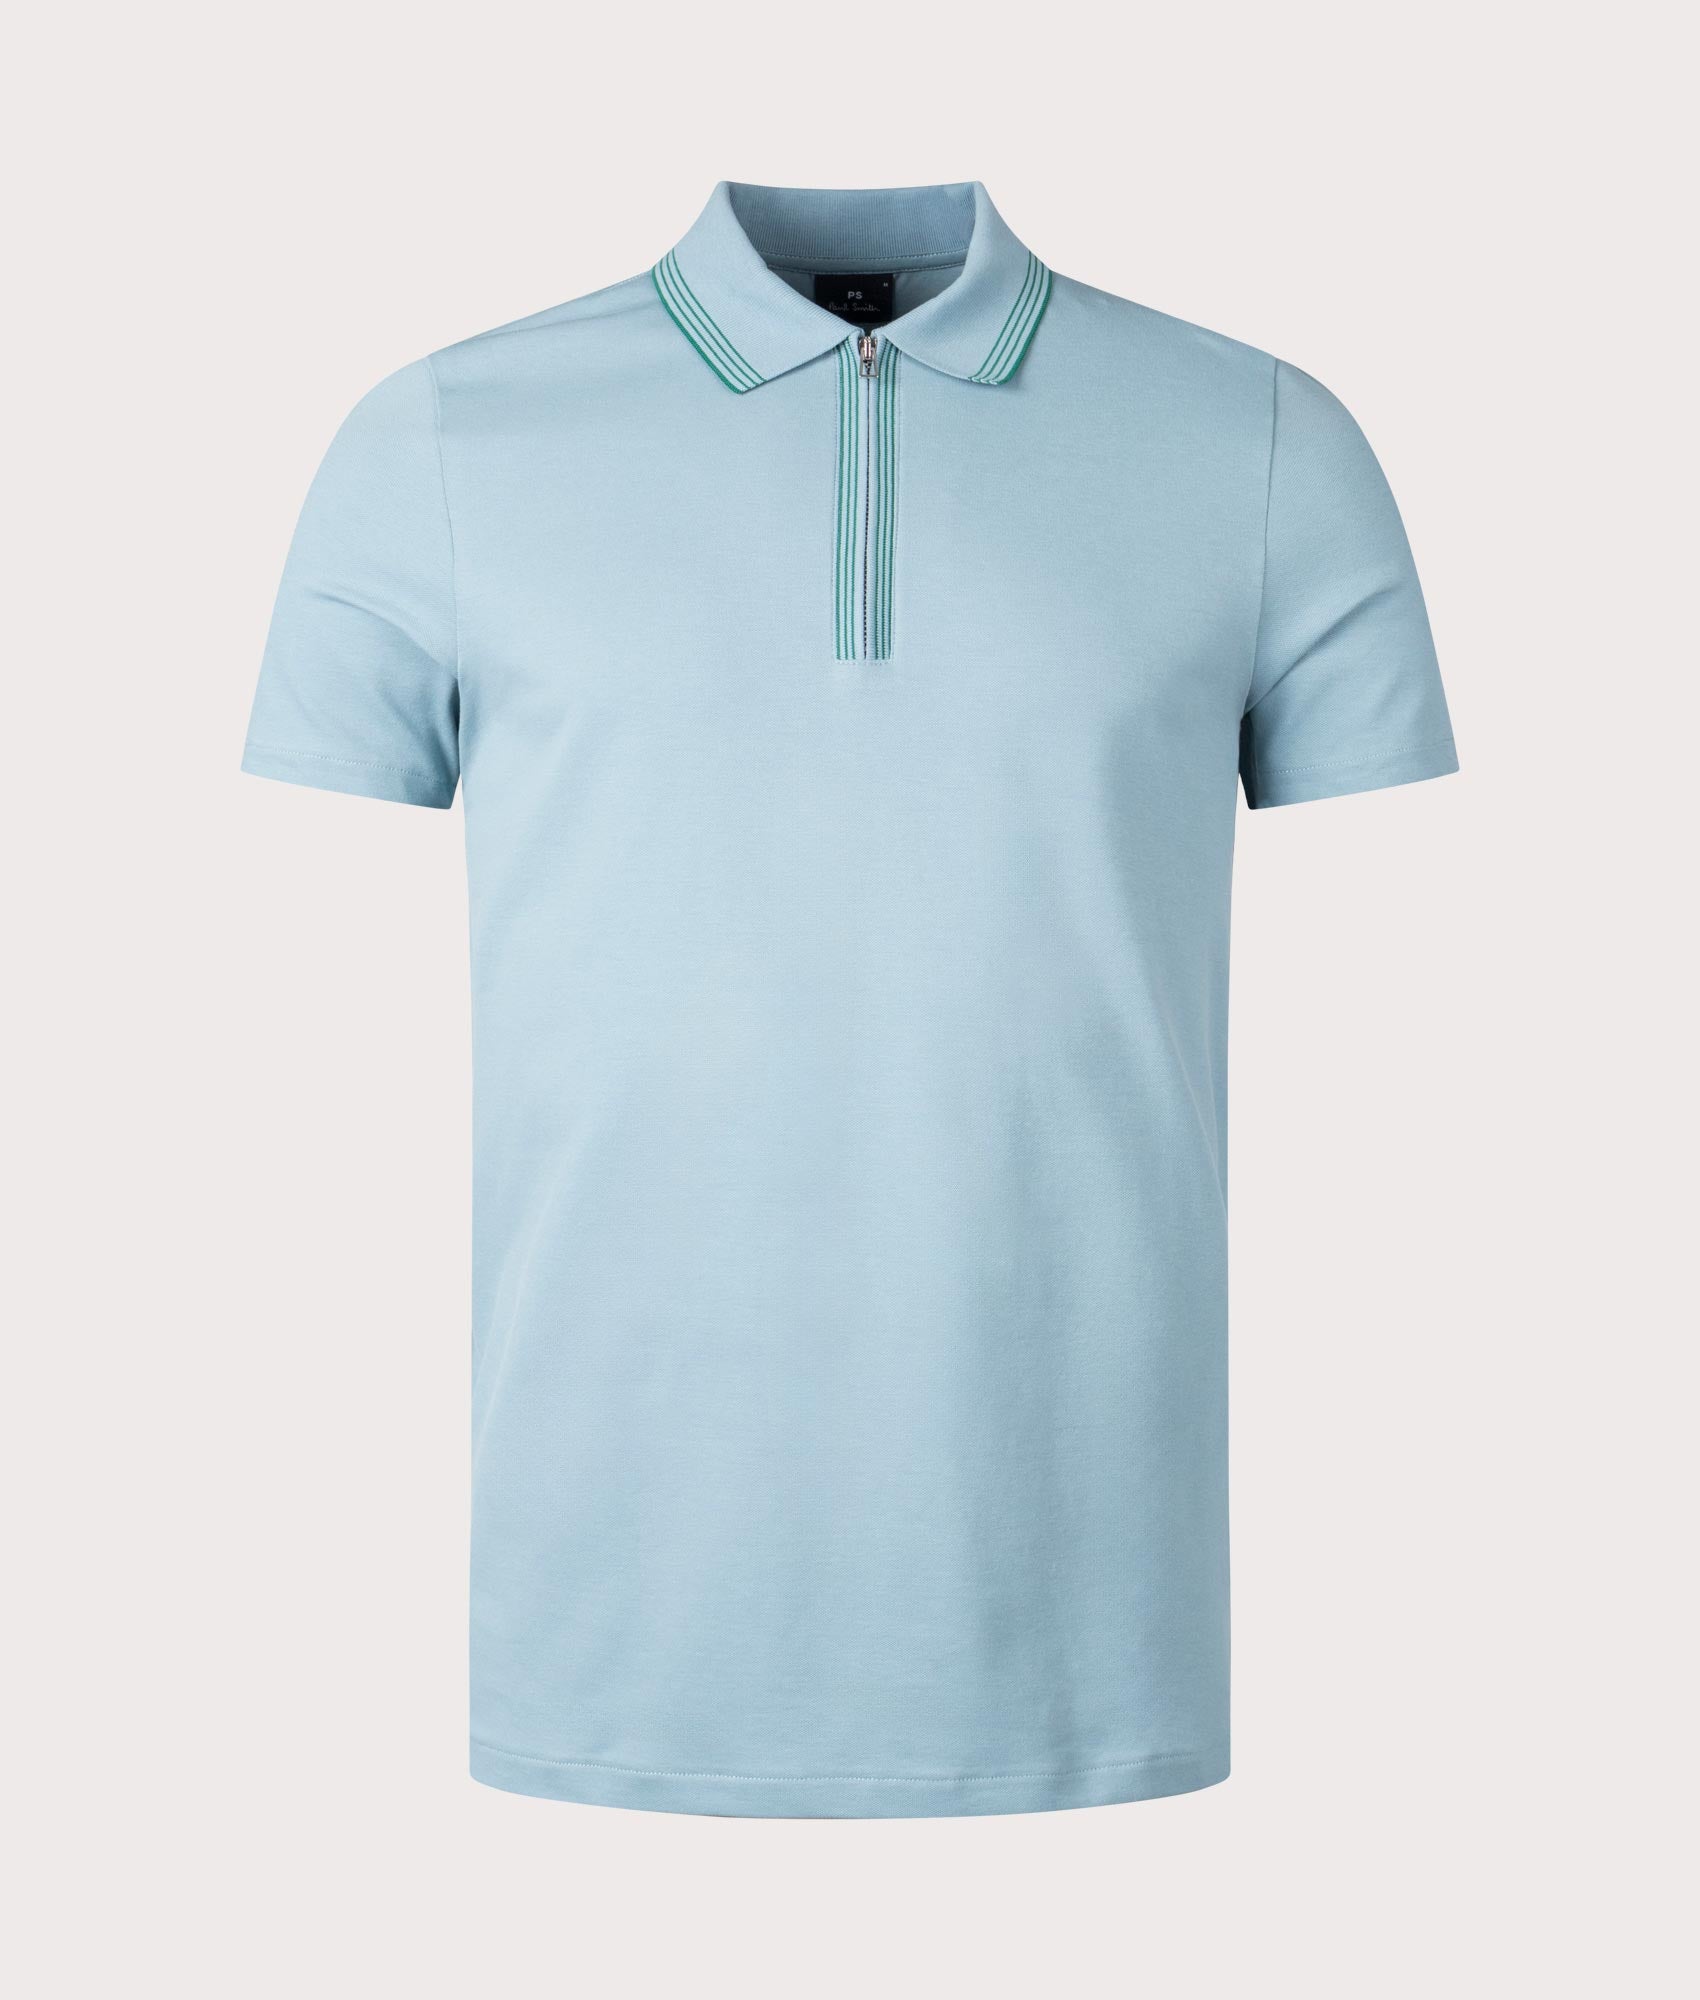 PS Paul Smith Mens Zip Neck Polo Shirt - Colour: 41A Cobalt Blue - Size: XXL